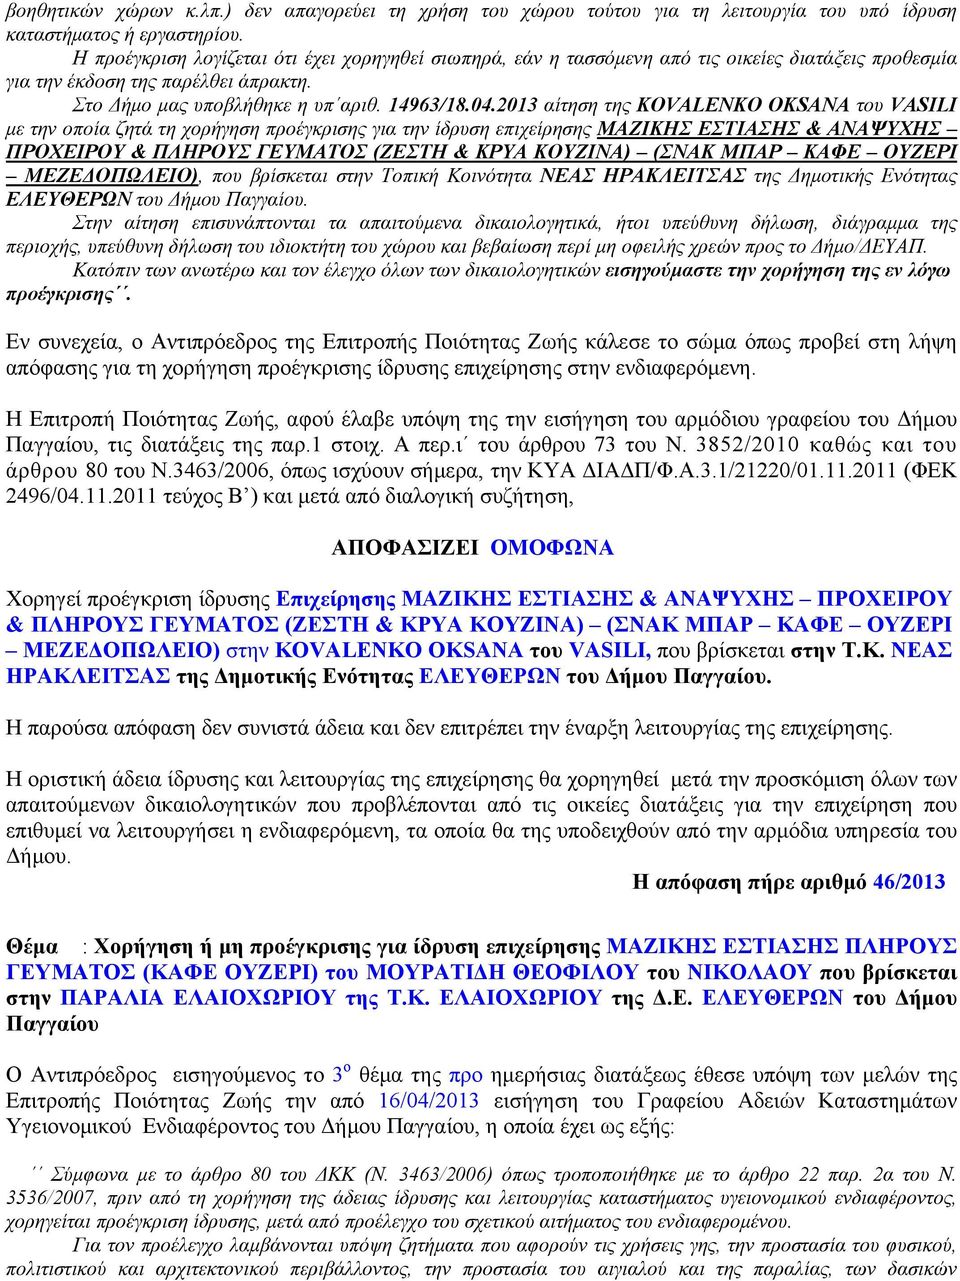 2013 αίτηση της KOVALENKO OKSANA του VASILI με την οποία ζητά τη χορήγηση προέγκρισης για την ίδρυση επιχείρησης ΜΑΖΙΚΗΣ ΕΣΤΙΑΣΗΣ & ΑΝΑΨΥΧΗΣ ΠΡΟΧΕΙΡΟΥ & ΠΛΗΡΟΥΣ ΓΕΥΜΑΤΟΣ (ΖΕΣΤΗ & ΚΡΥΑ ΚΟΥΖΙΝΑ) (ΣΝΑΚ